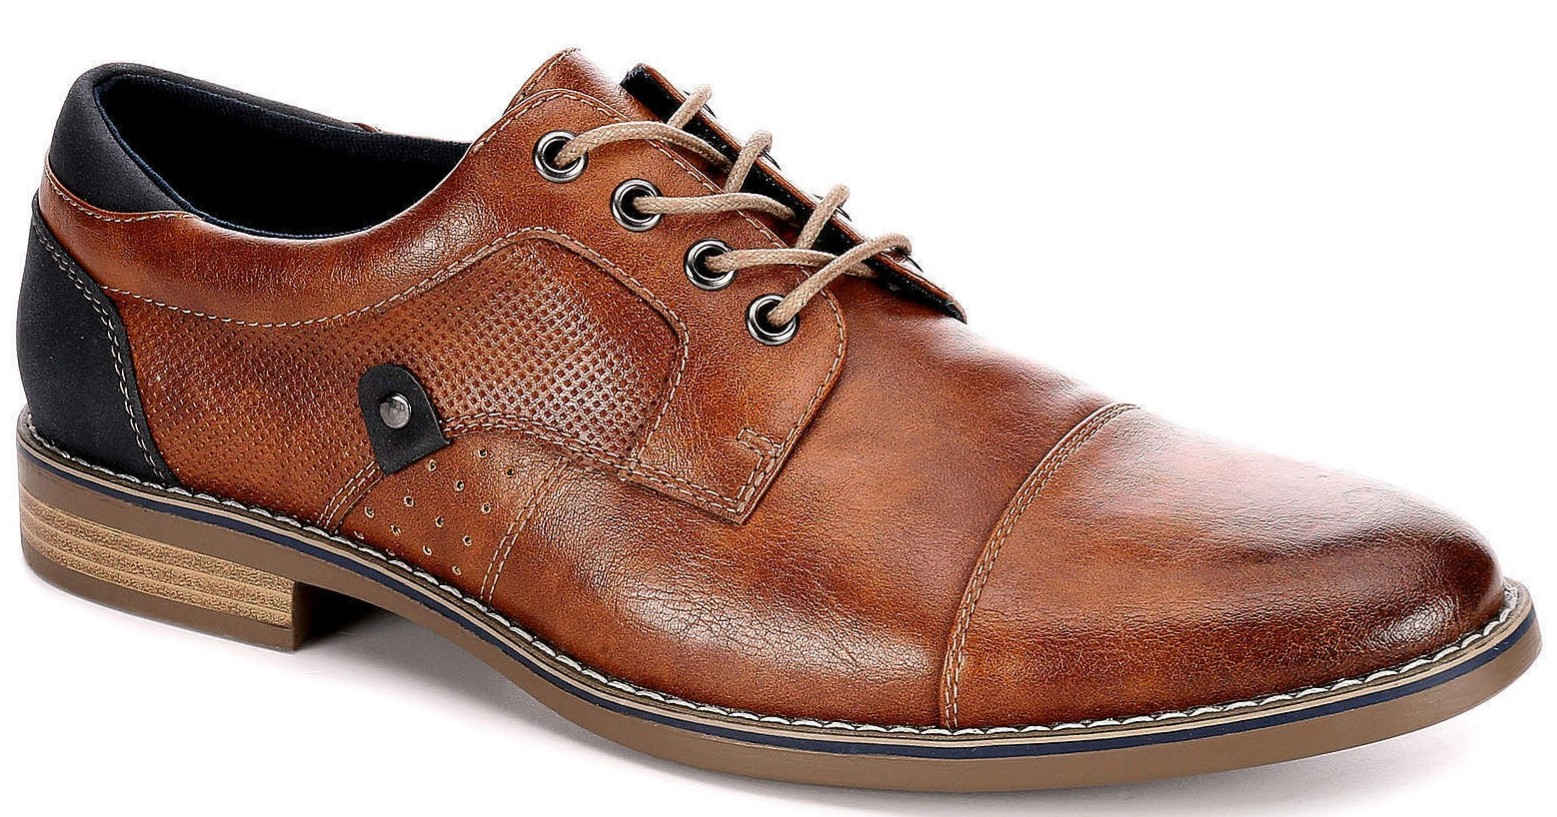 Restoration men's lace up Oxford shoes for 19 Clark Deals